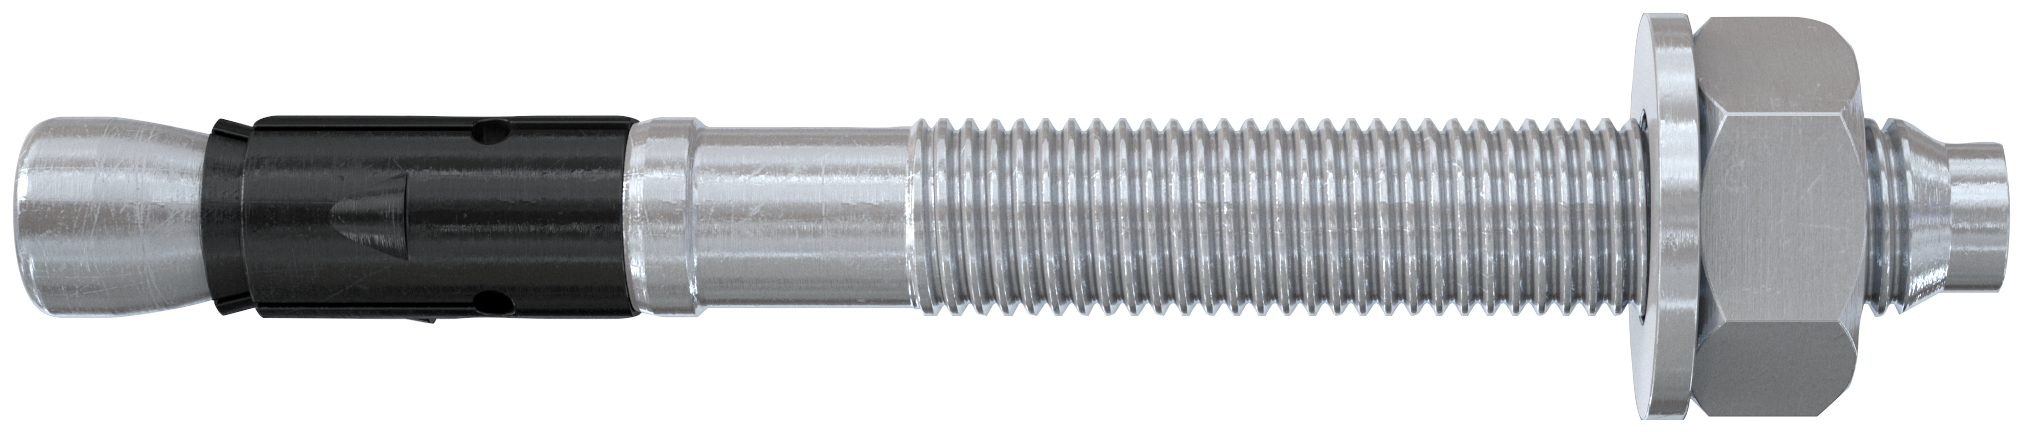 fischer Tassello acciaio FAZ II 12-160 (10 Pz.) L'ancorante ad espansione ad alte prestazioni per carichi statici su calcestruzzo fessurato e per applicazioni sismiche. Versione in acciaio zincato. fie1577